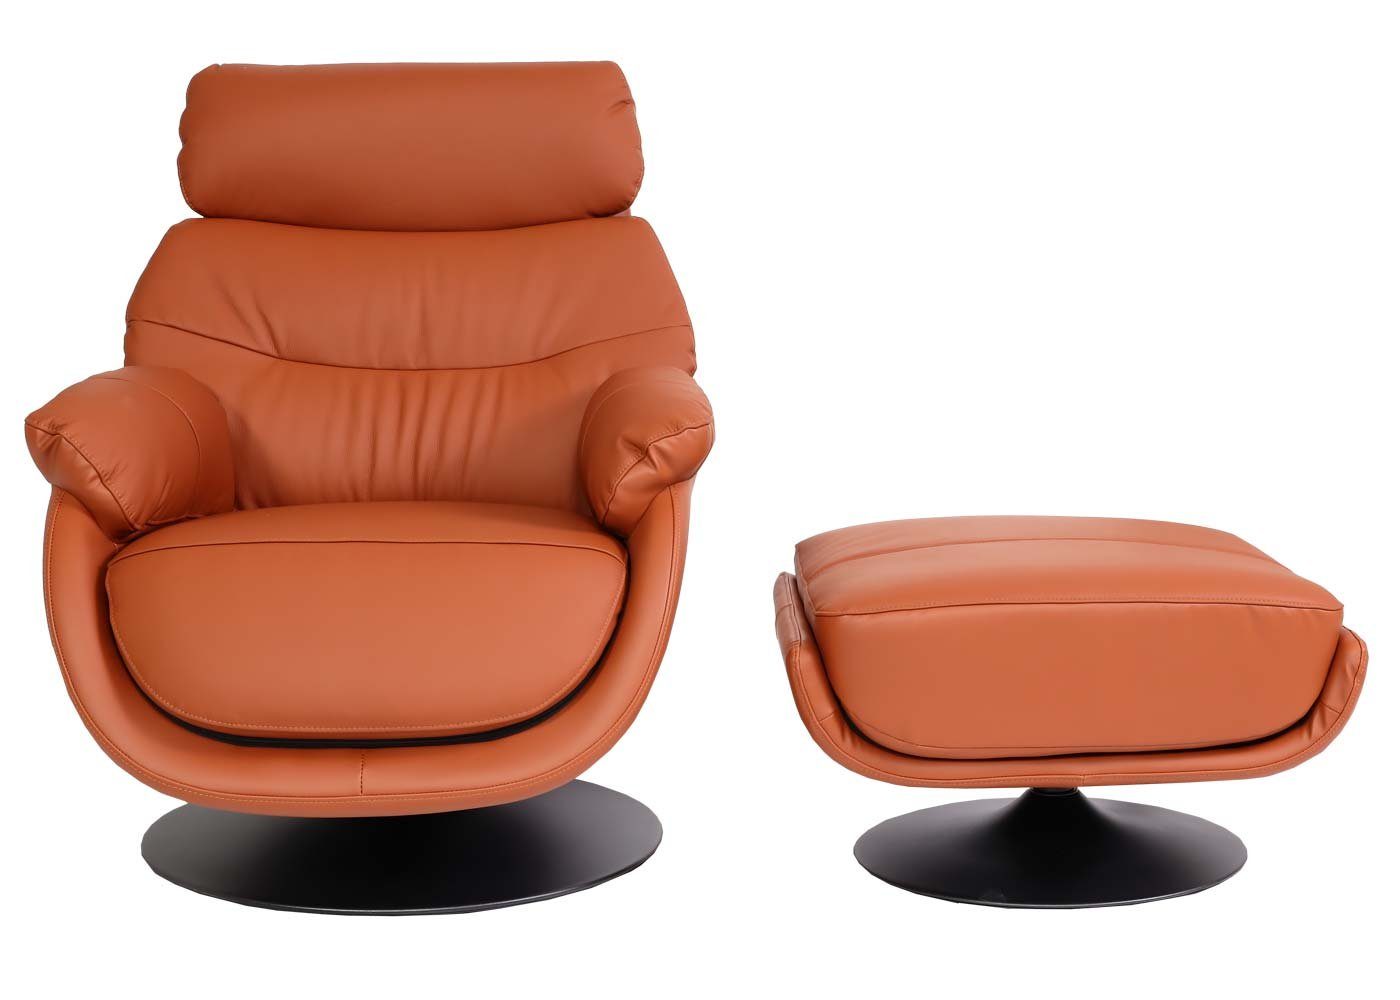 MCW Relaxsessel MCW-K99, Mit Sitzfläche, Breite Mit Feststellhebel, | braun braun Armlehnen